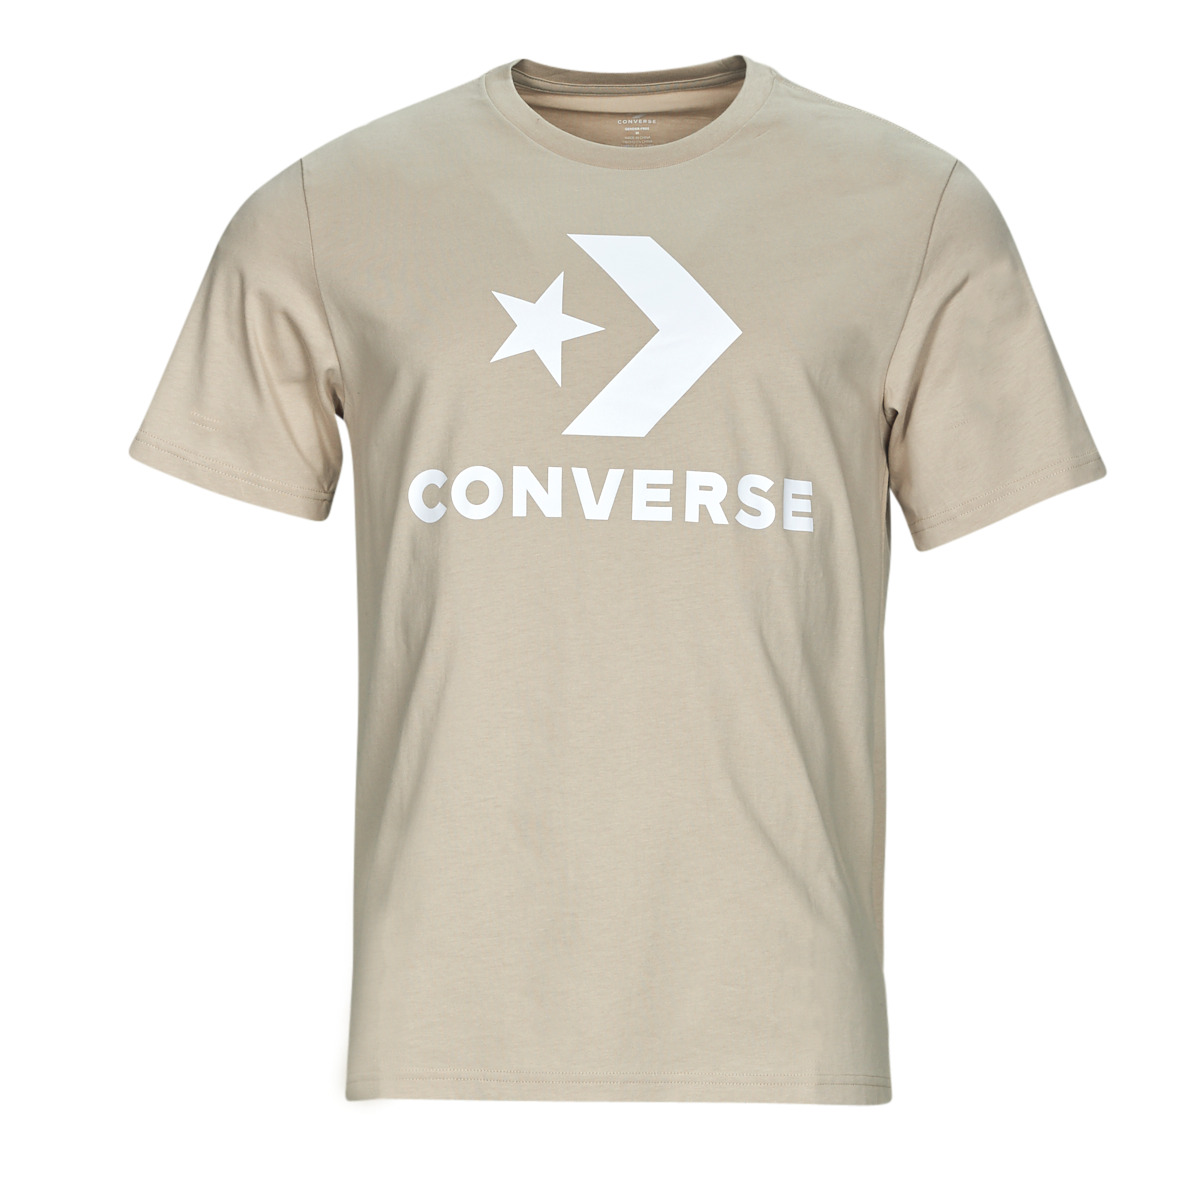 textil Camisetas manga corta Converse GO-TO STAR CHEVRON LOGO Beige